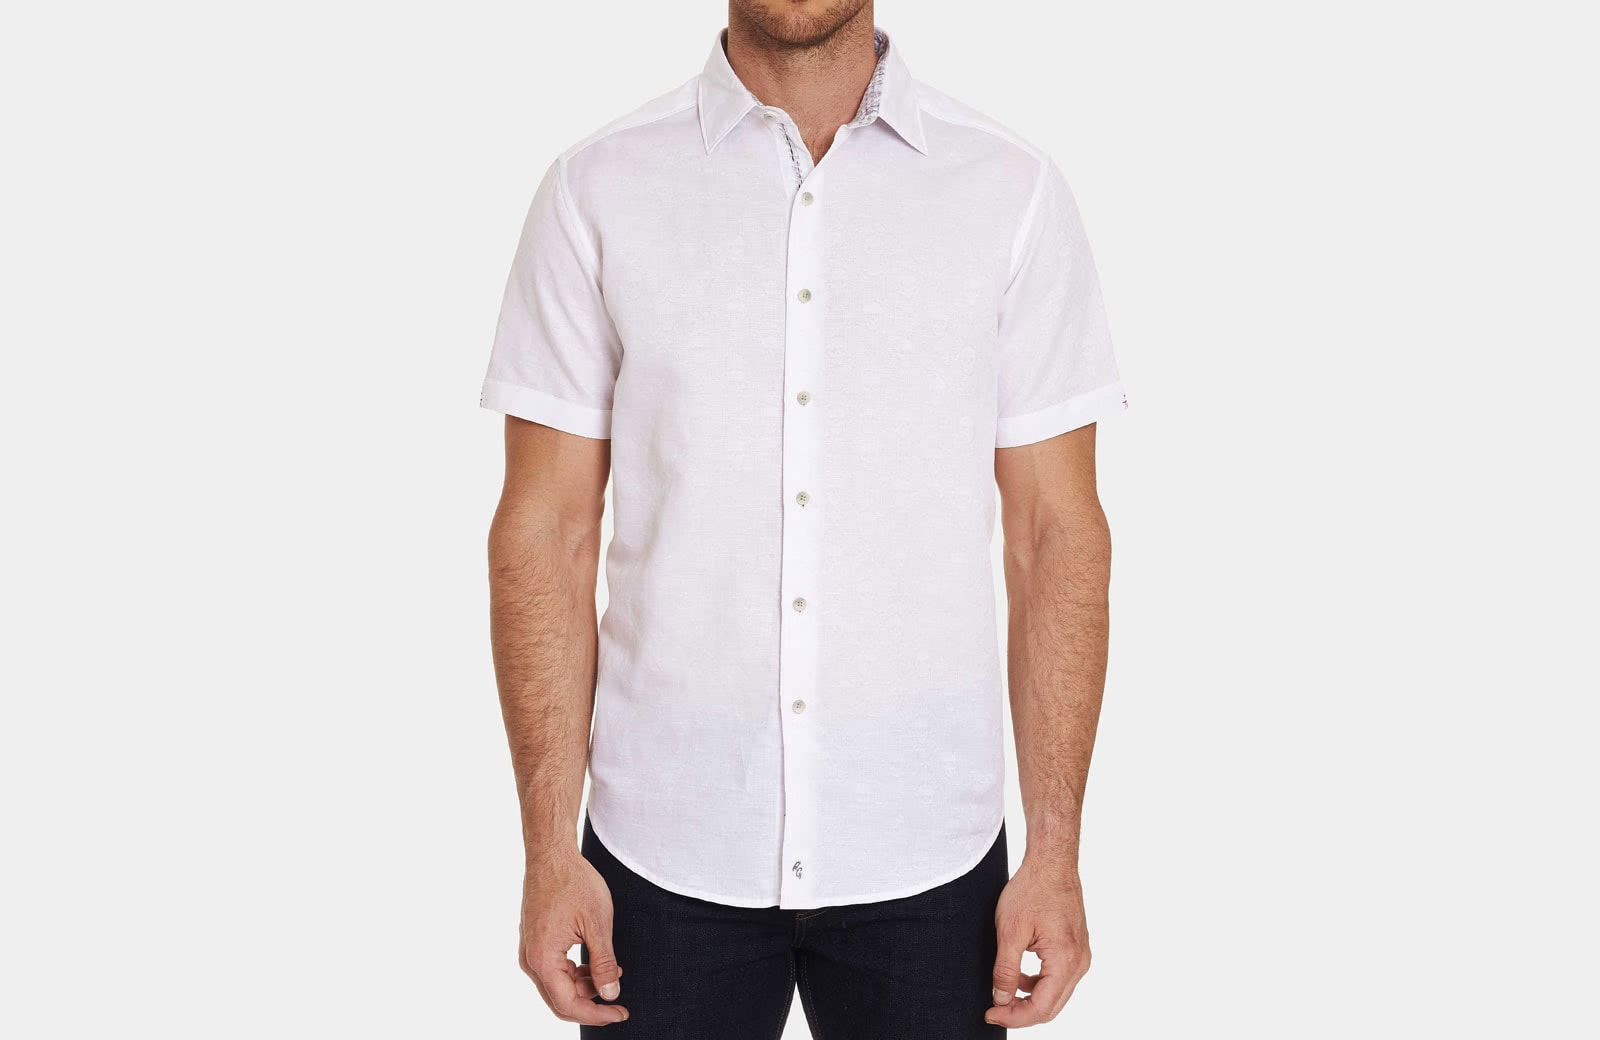 Robert Graham best men summer designer short sleeve shirt white - Luxe Digital